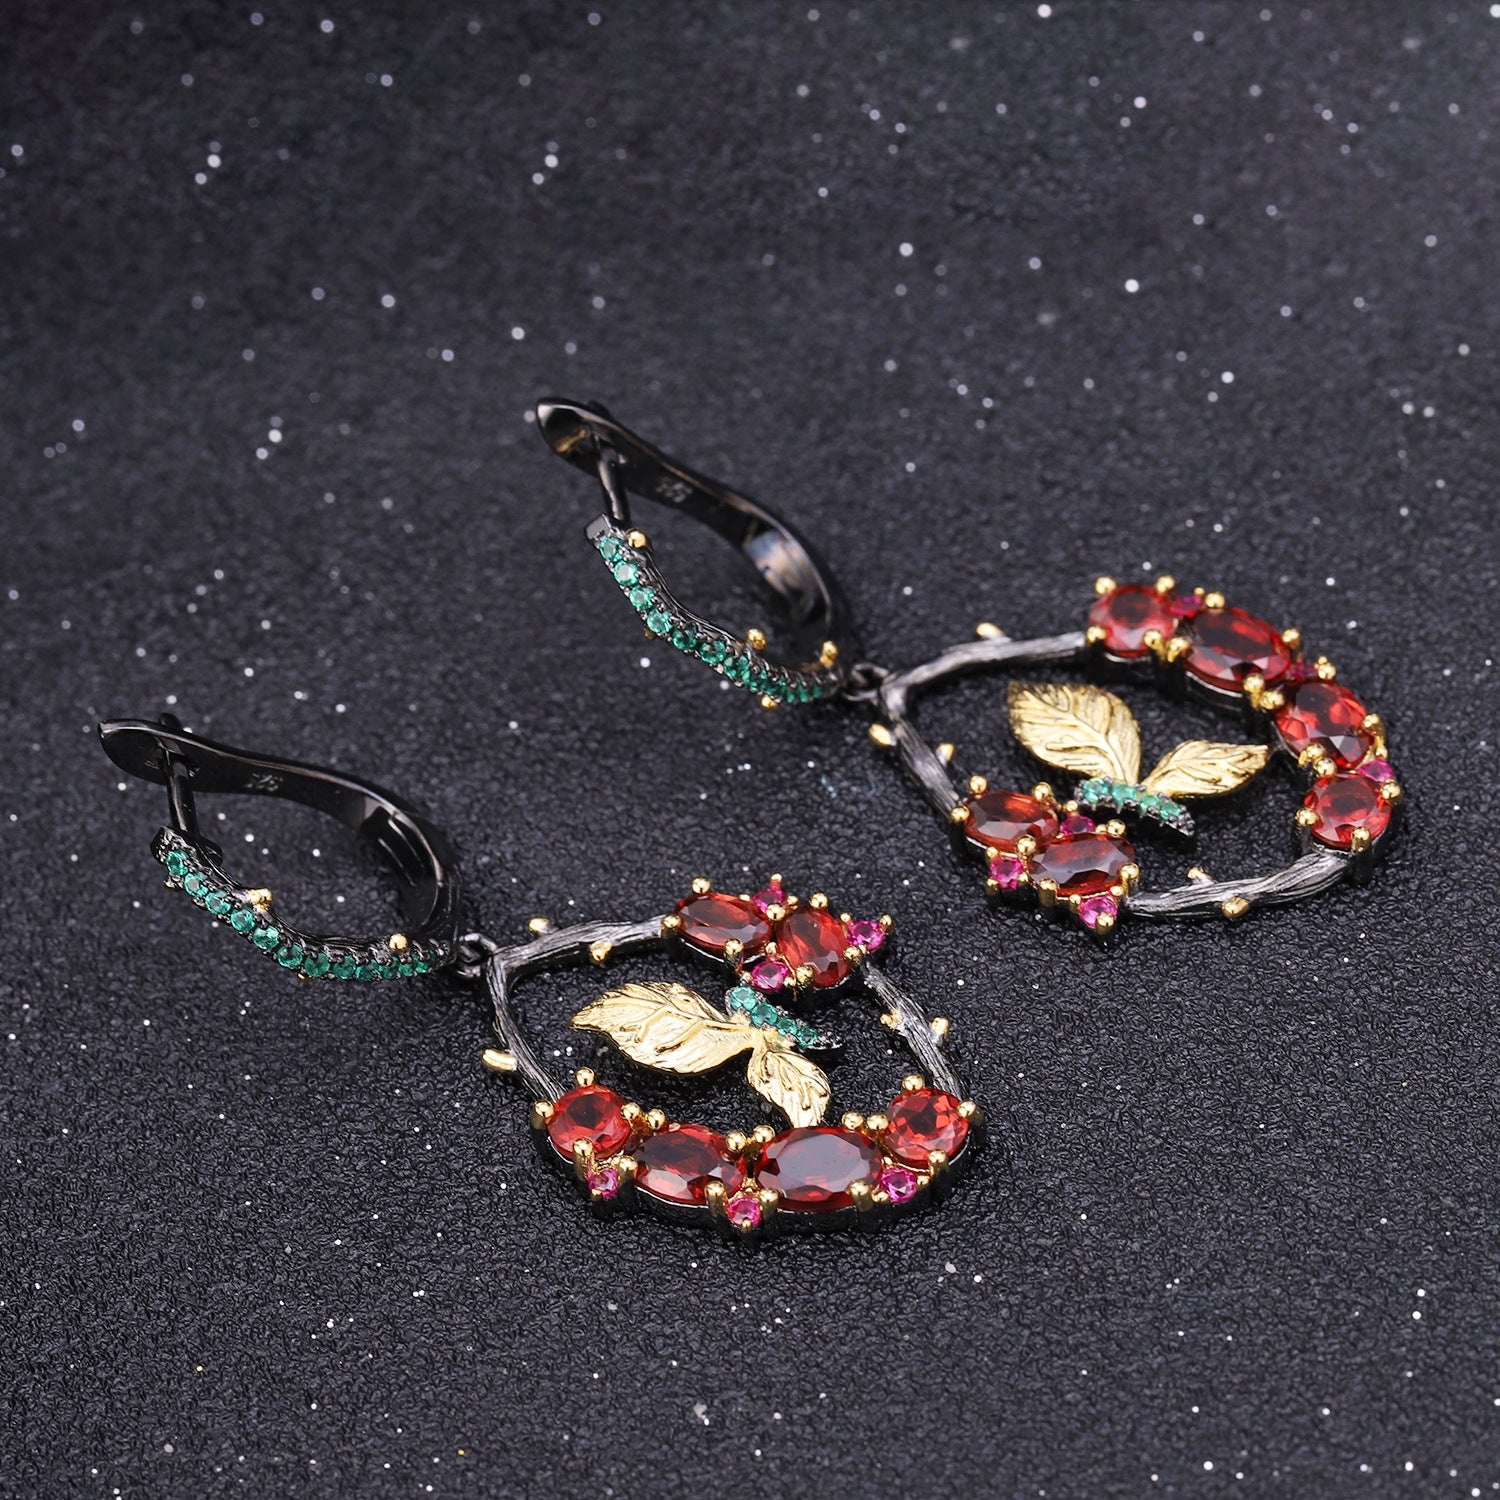 Butterfly Design s925 Sterling Silver Drop Earrings for Women